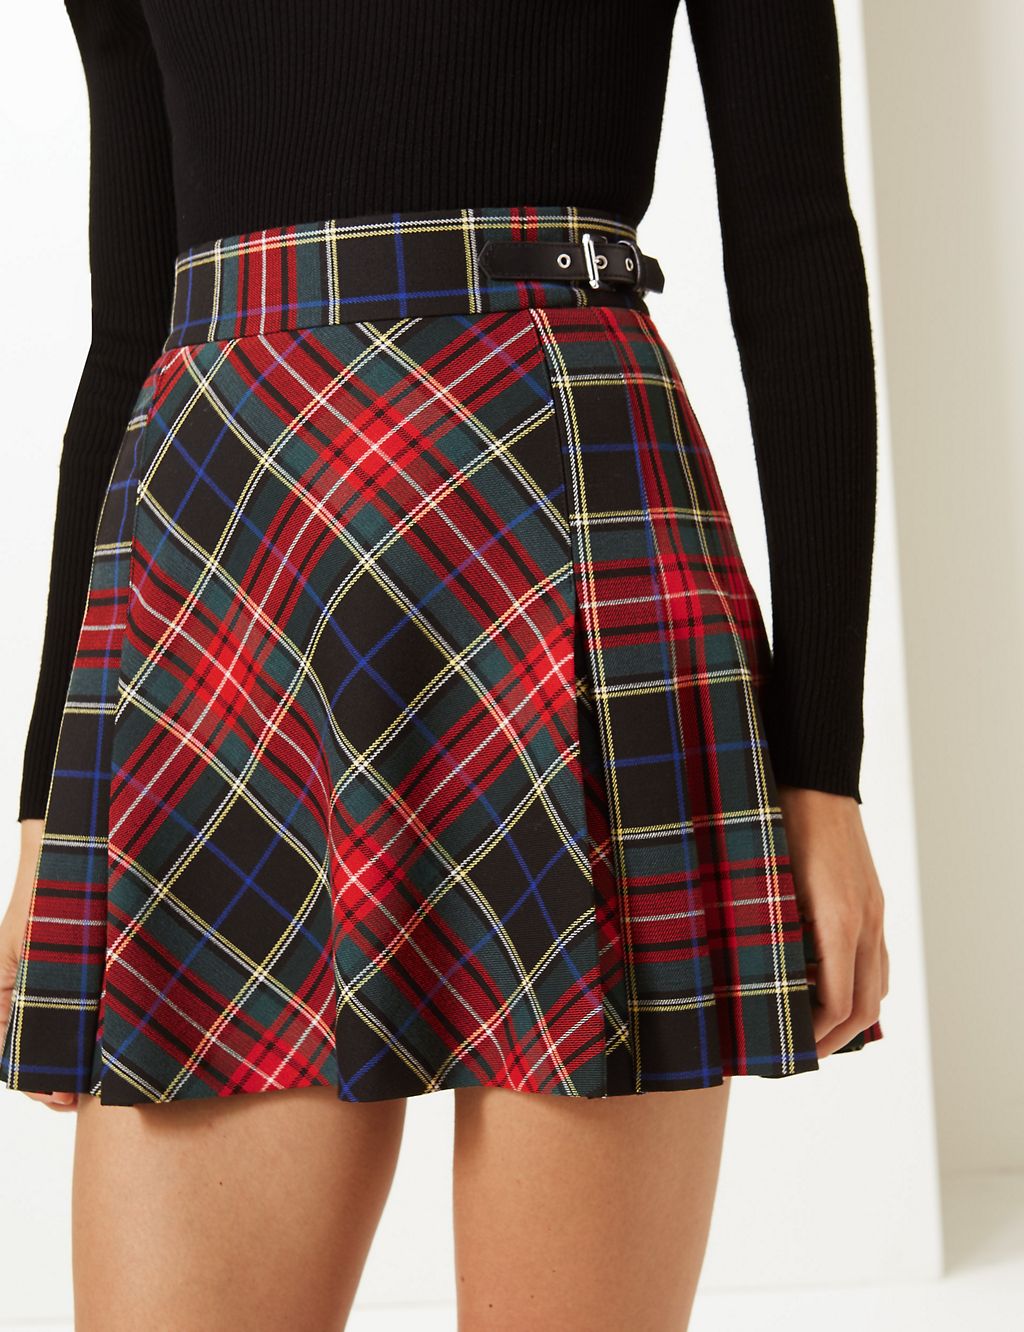 Checked Kilt Mini Skirt 5 of 5